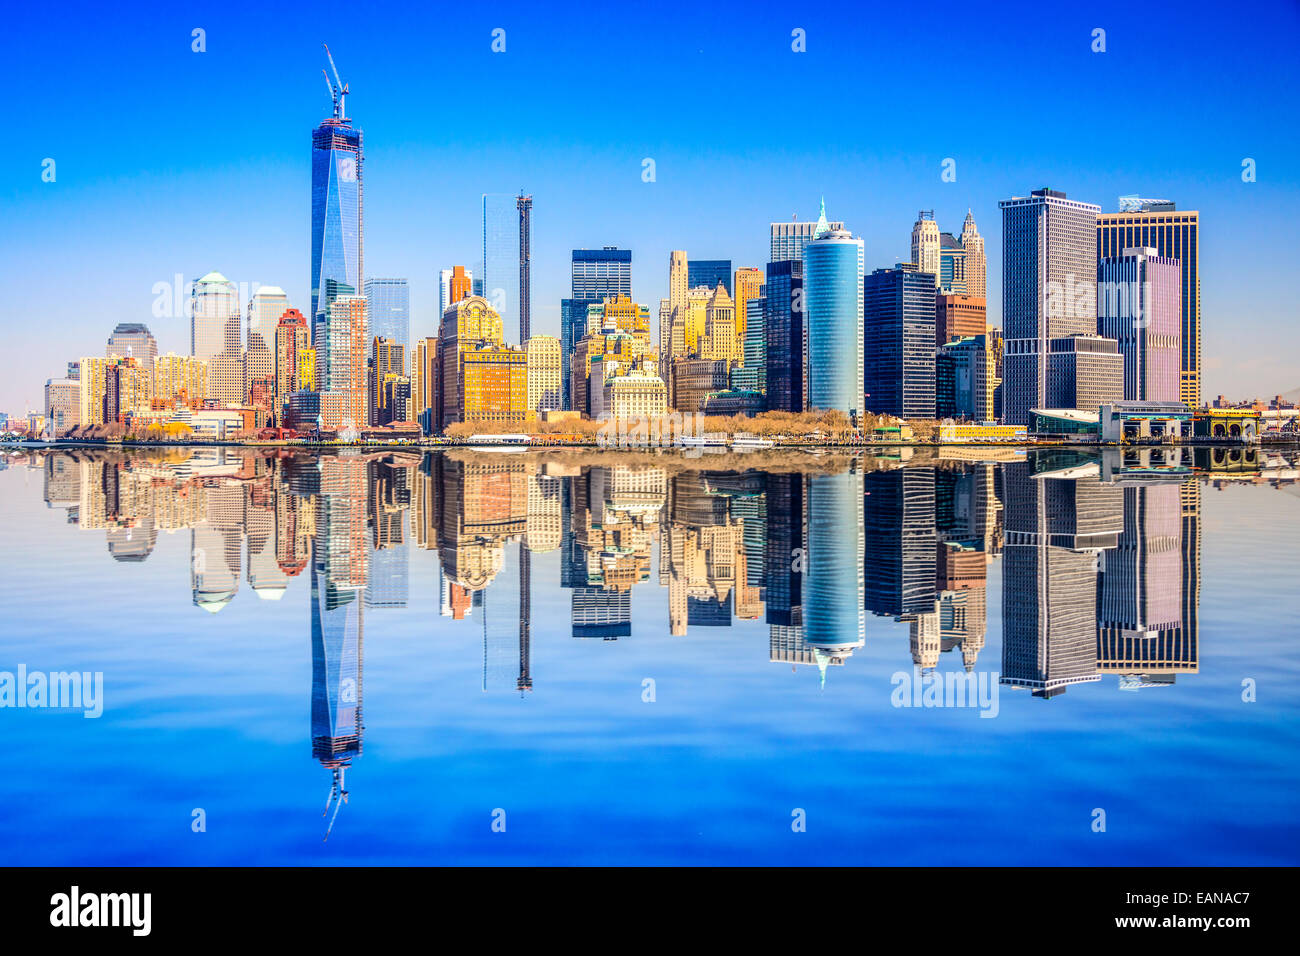 La ville de New York, USA city skyline de Manhattan. Banque D'Images